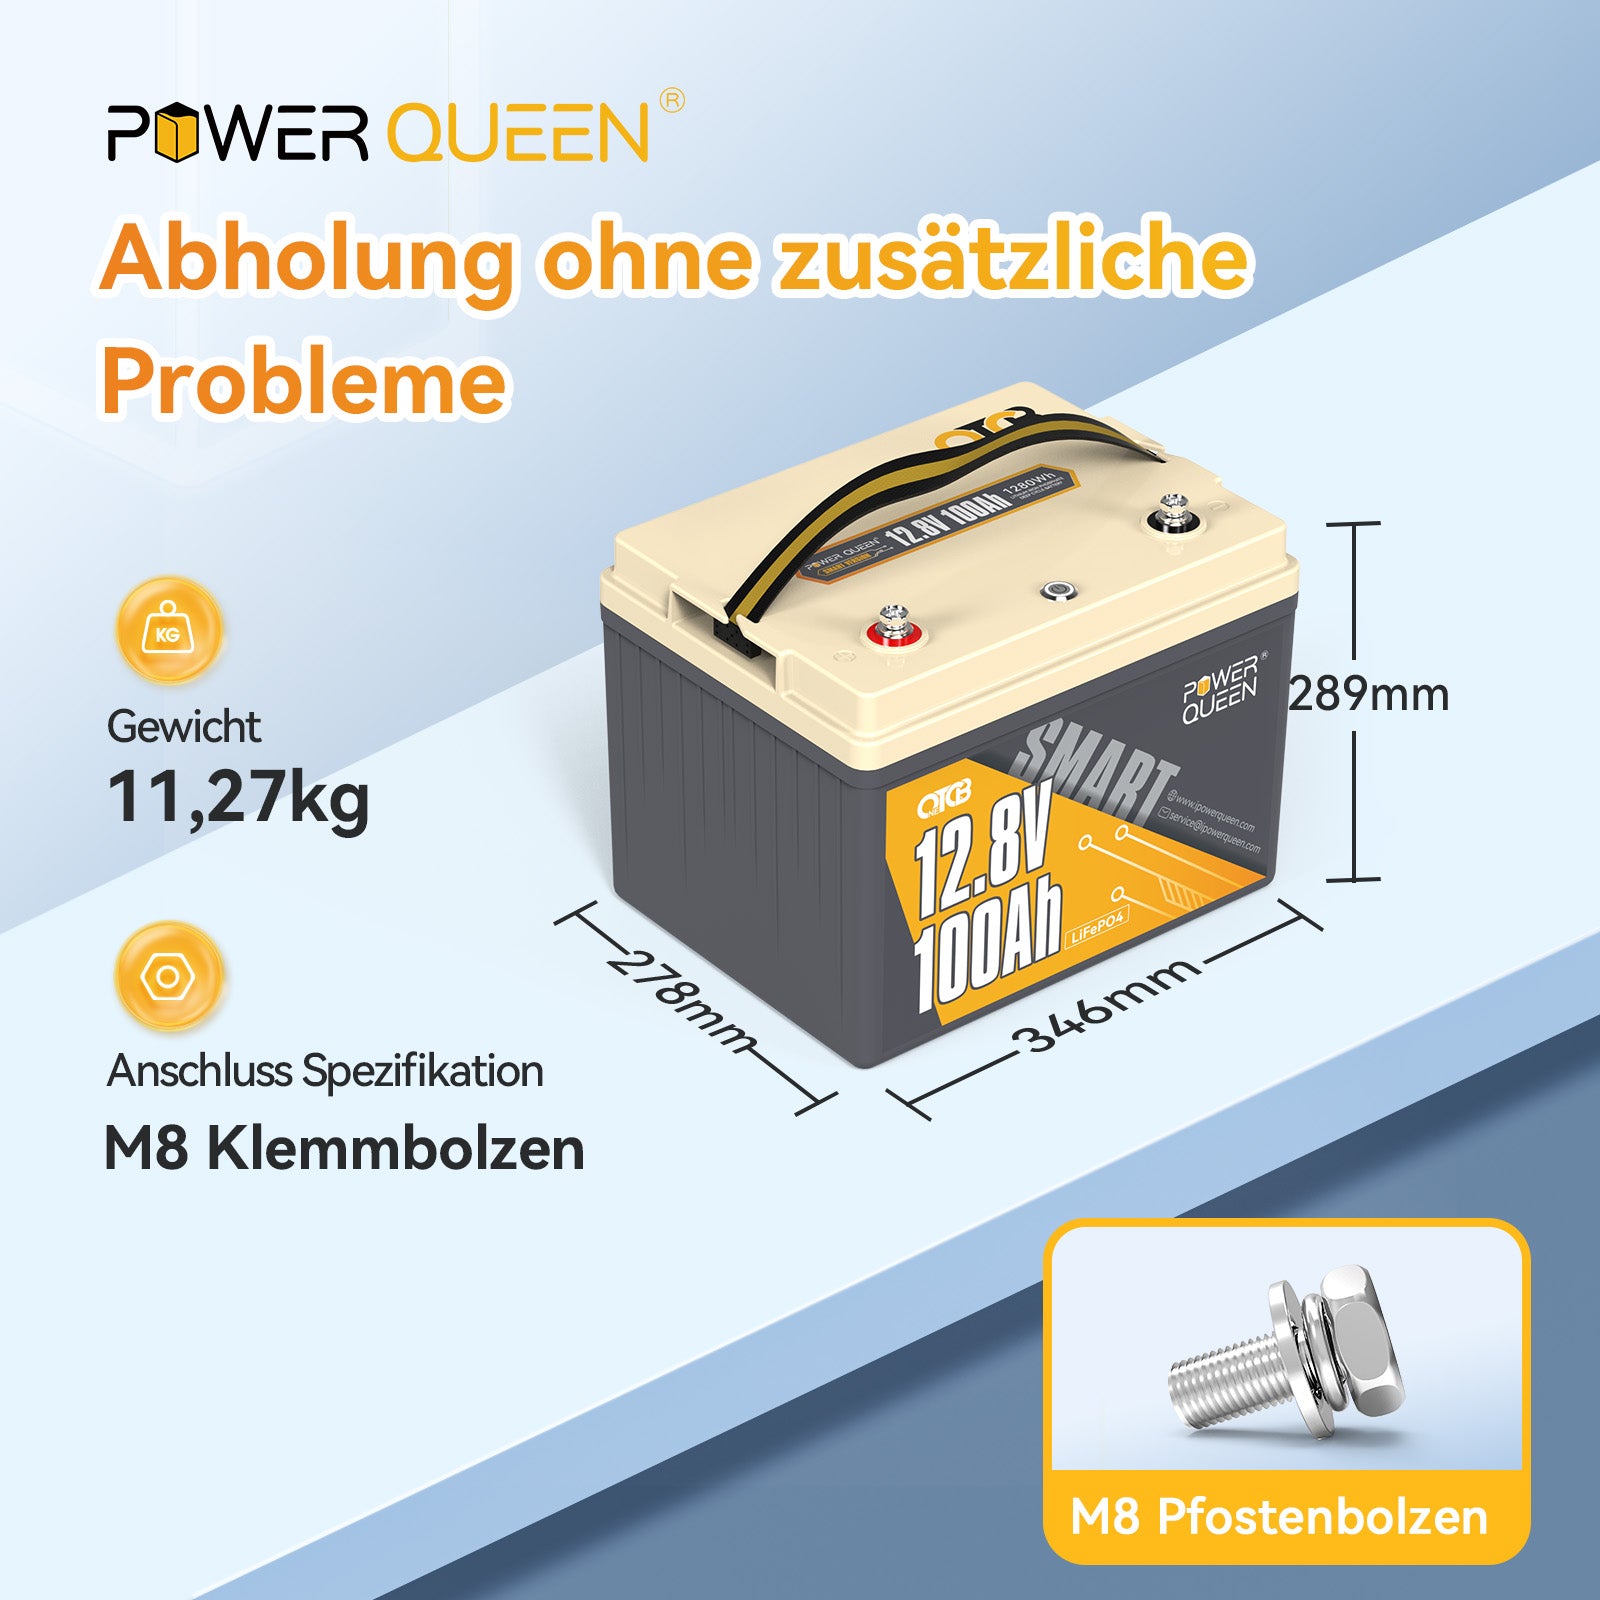 Geringes Gewicht und Abmessung, tragbare LiFiPO4 Batterie